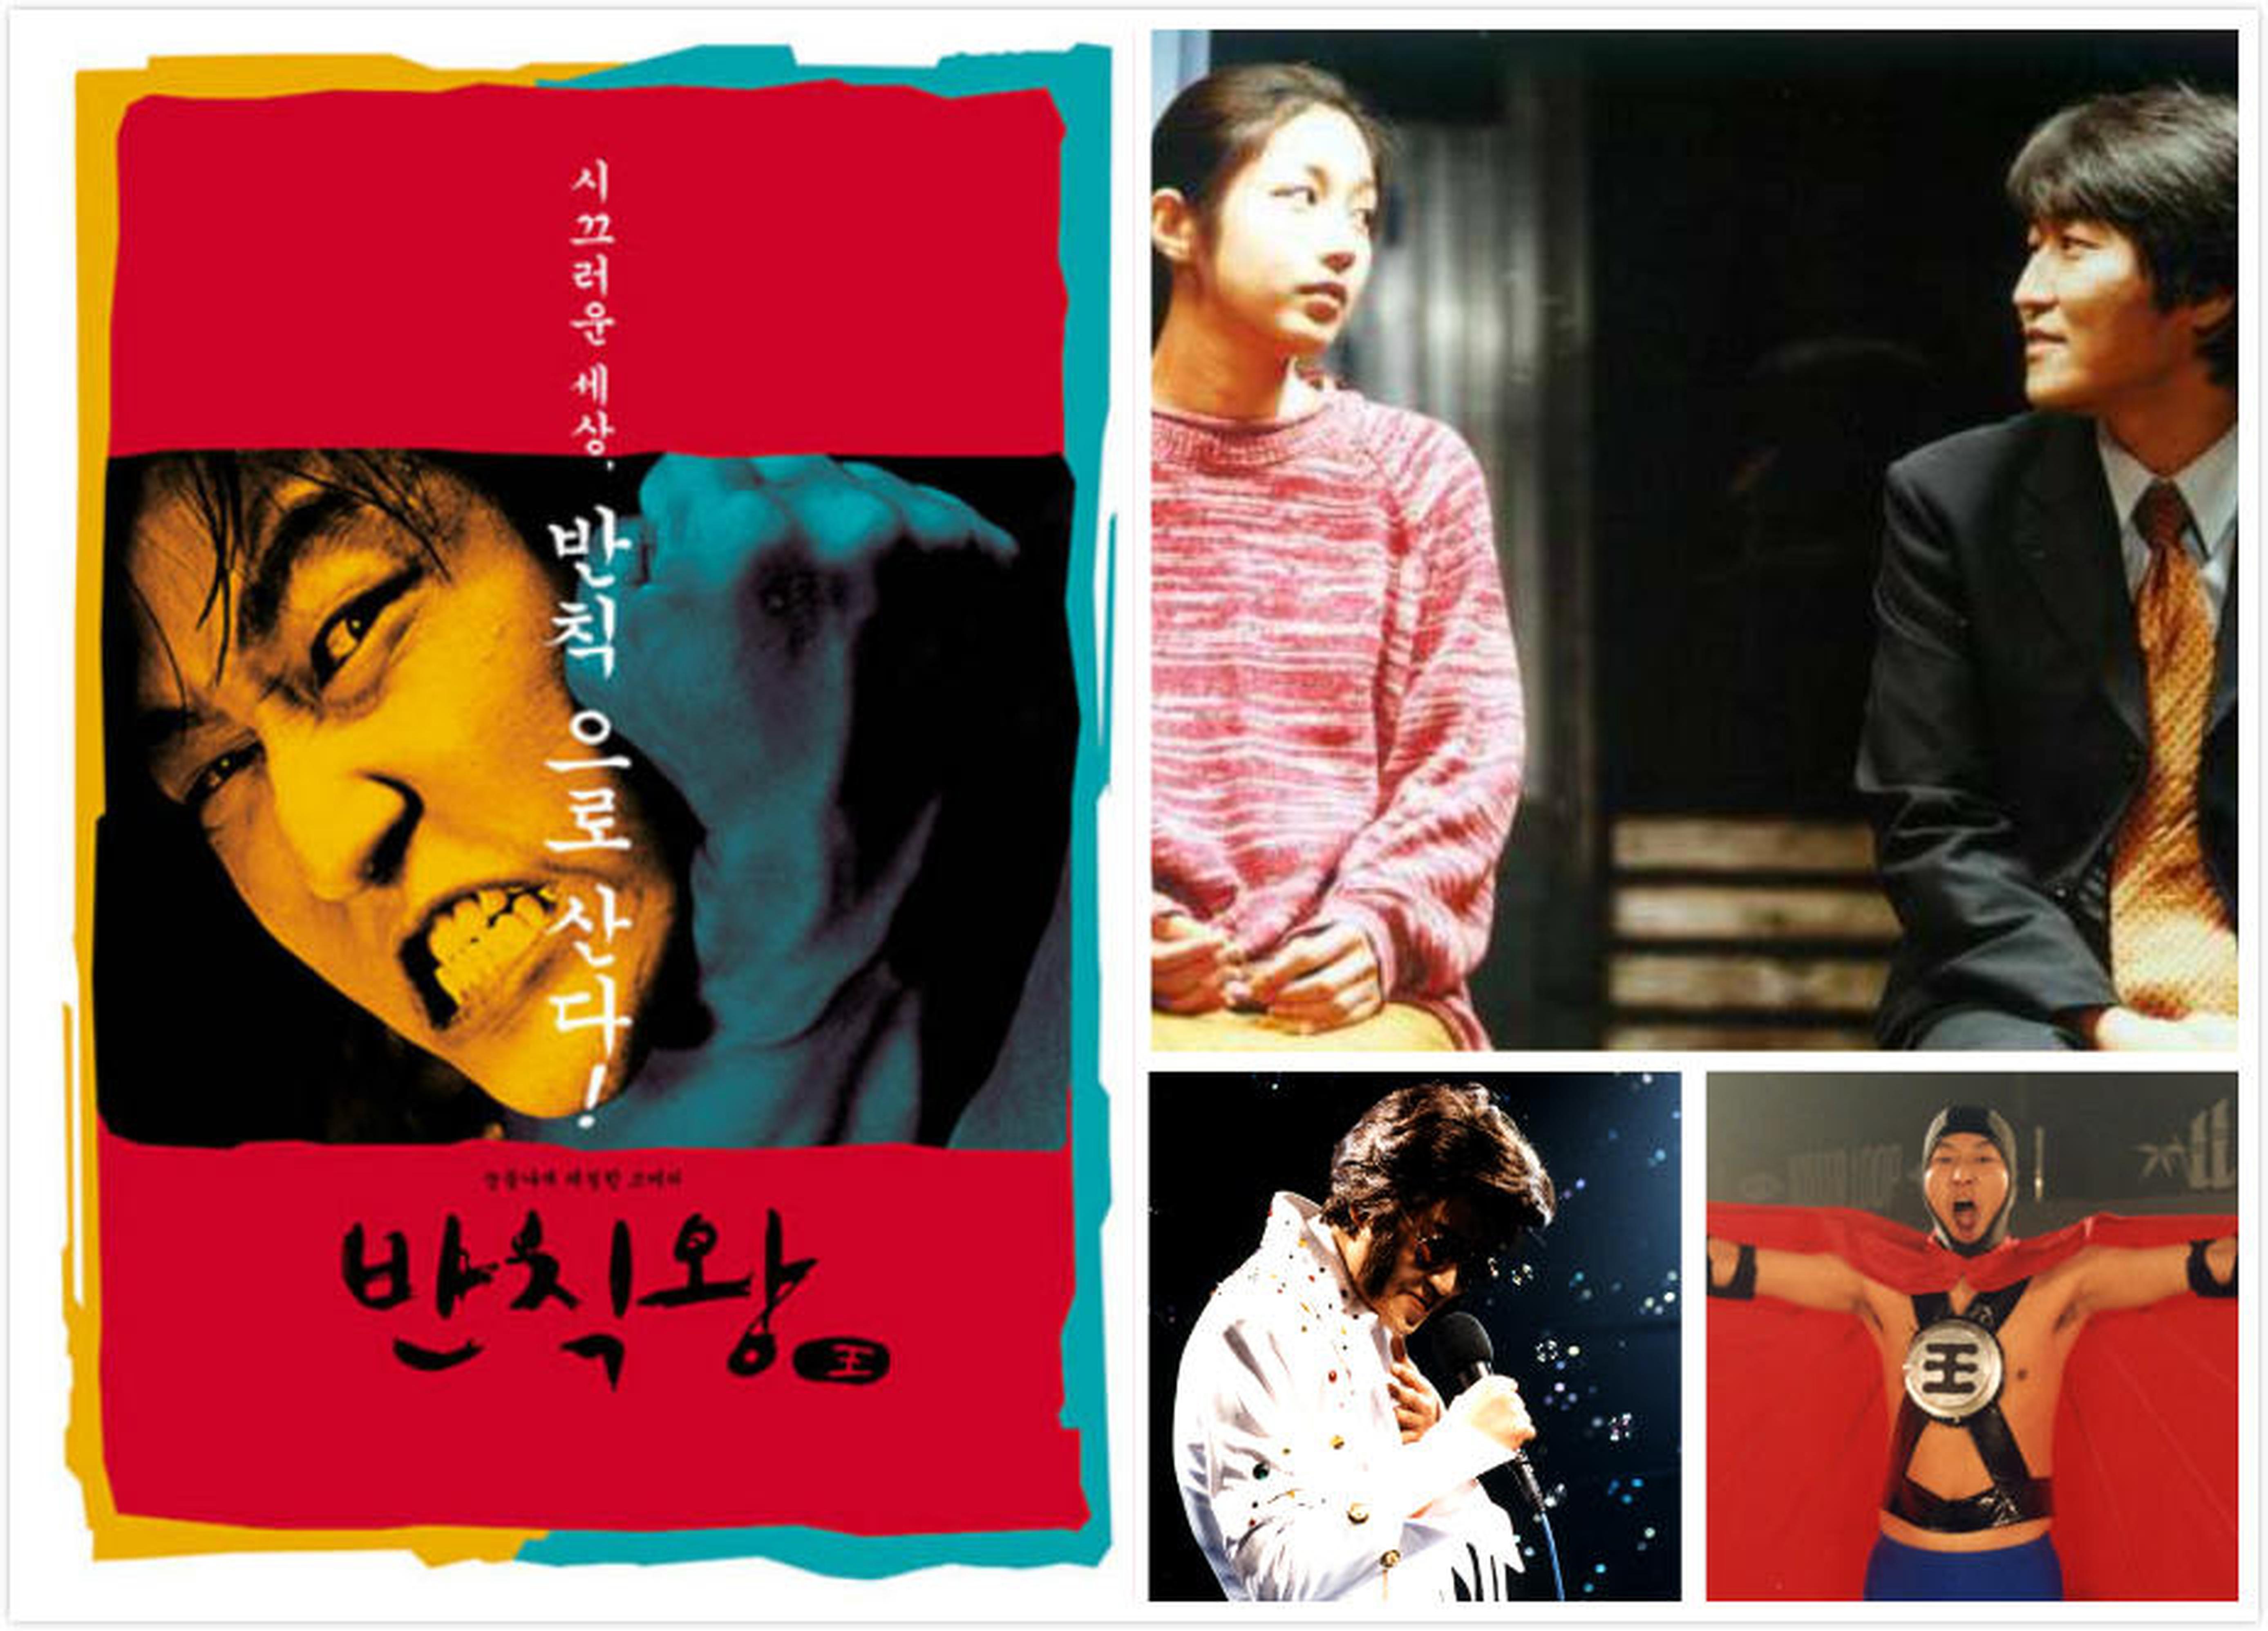 【2000-2010】《茅趸王》 (2000)导演金知云。宋康昊最爱的一部自己出演的电影。